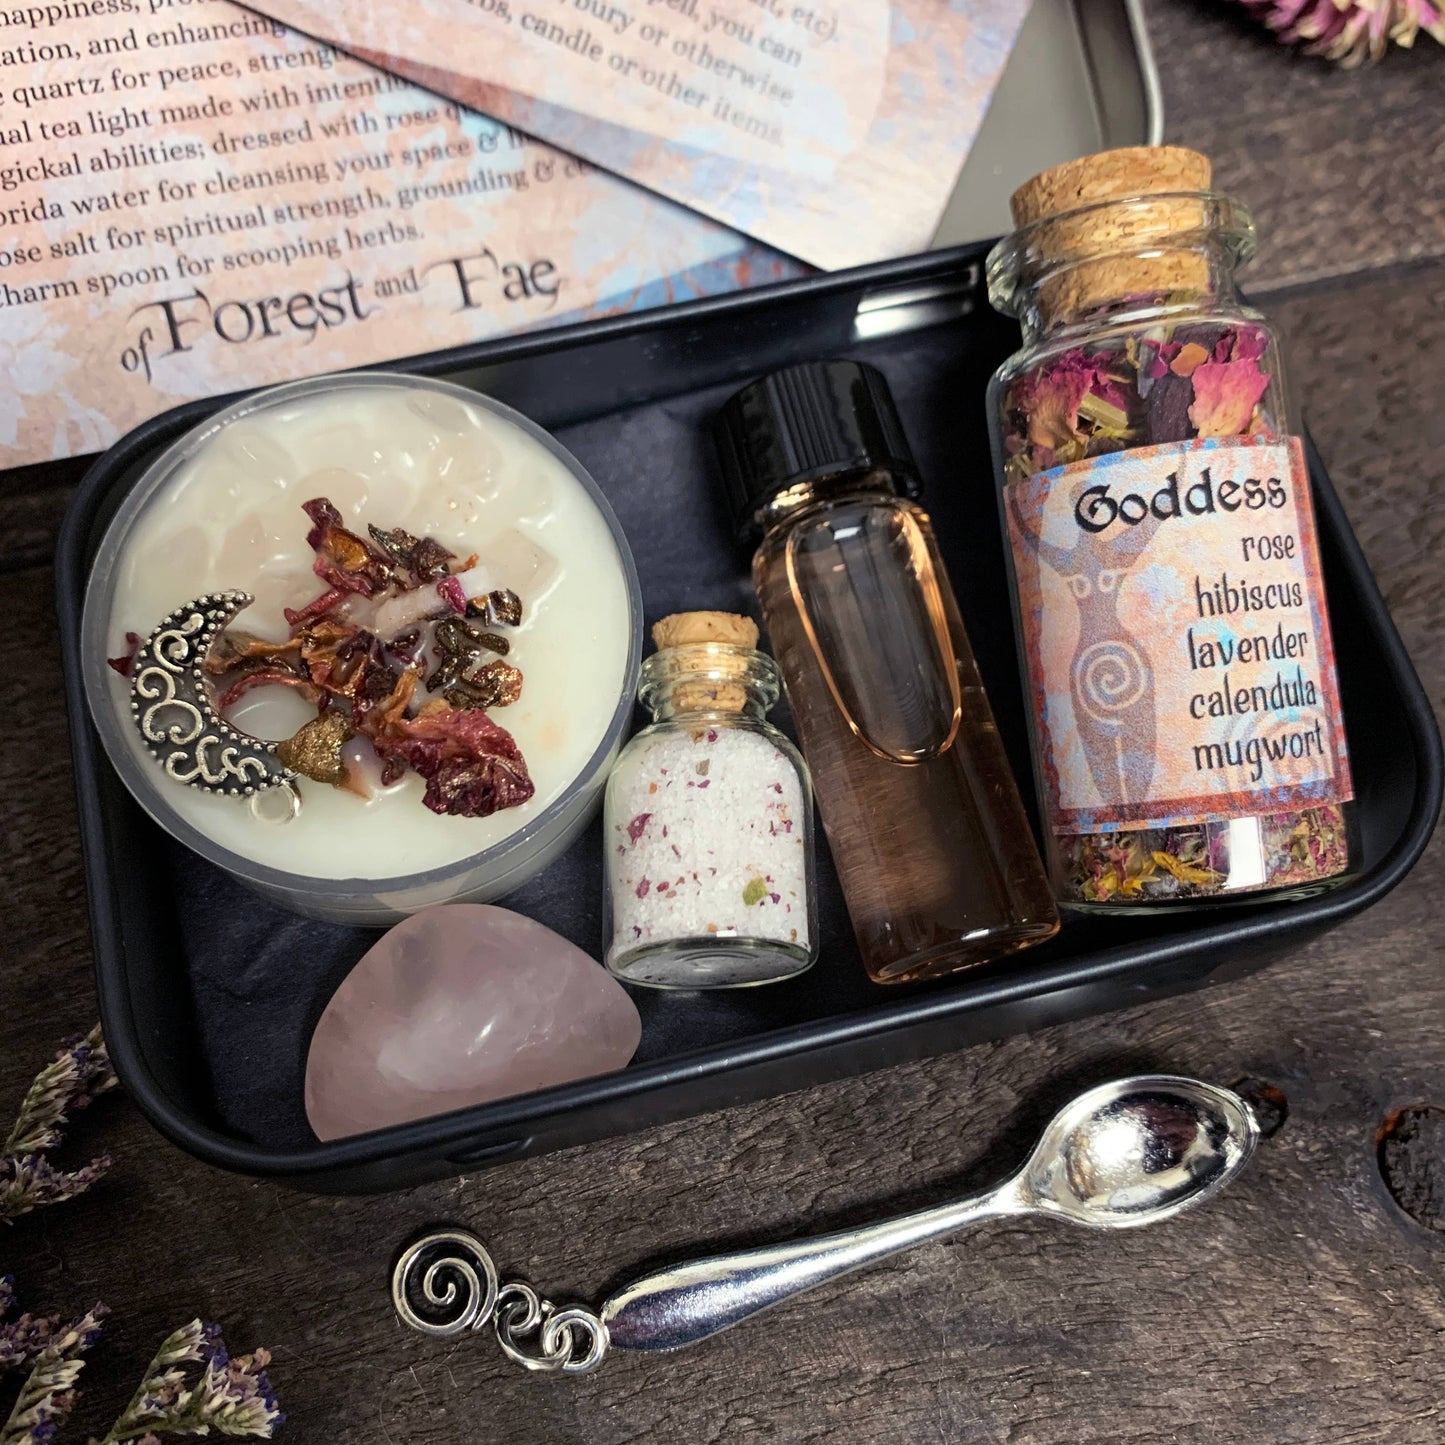 Goddess Travel Altar • Witch Kit for manifestation & spells